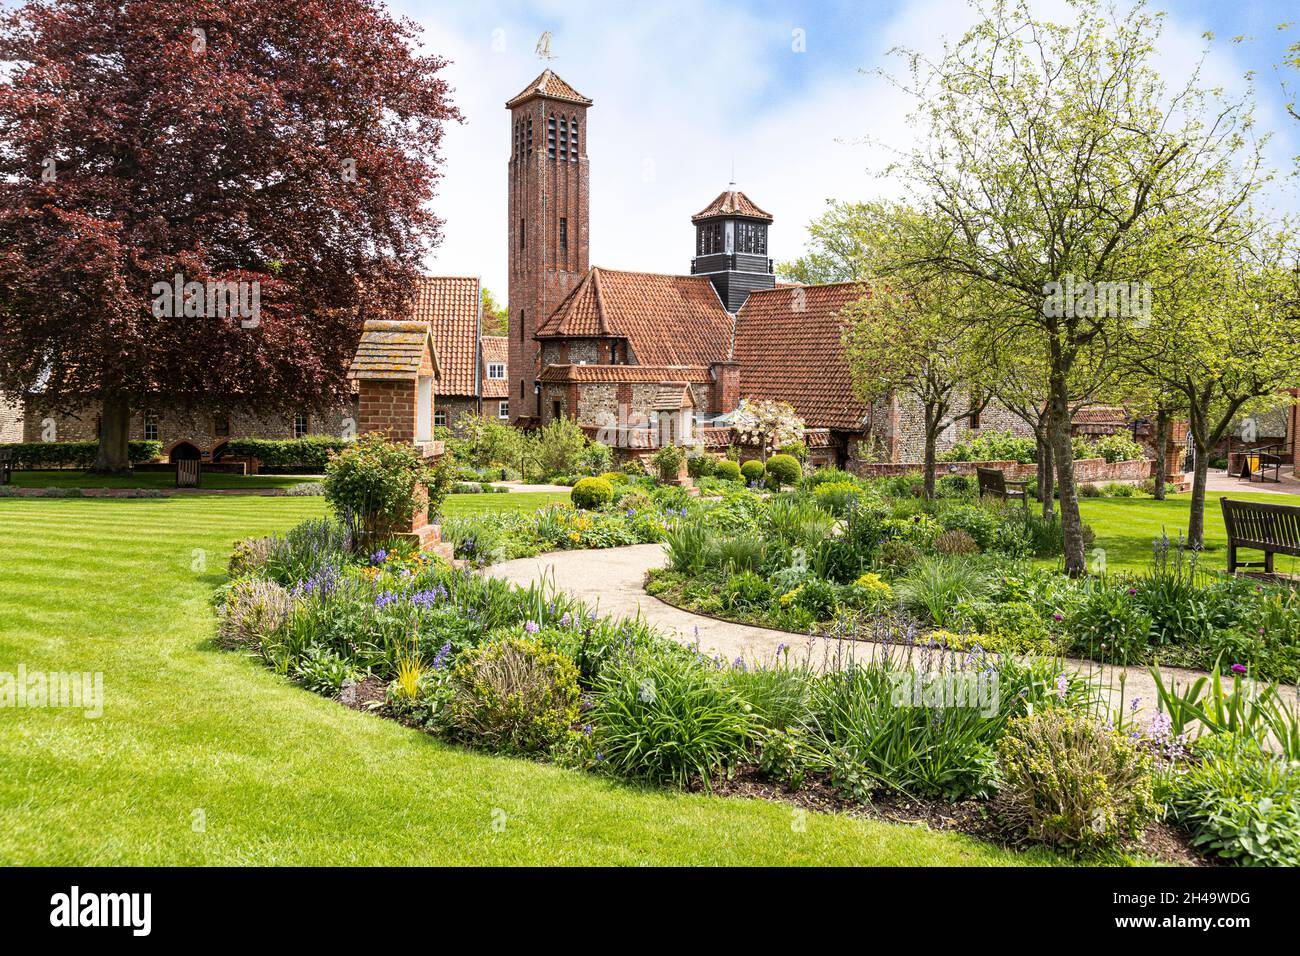 Les jardins du sanctuaire de notre Dame de Walsingham dans le village de Little Walsingham, Norfolk UK. Banque D'Images